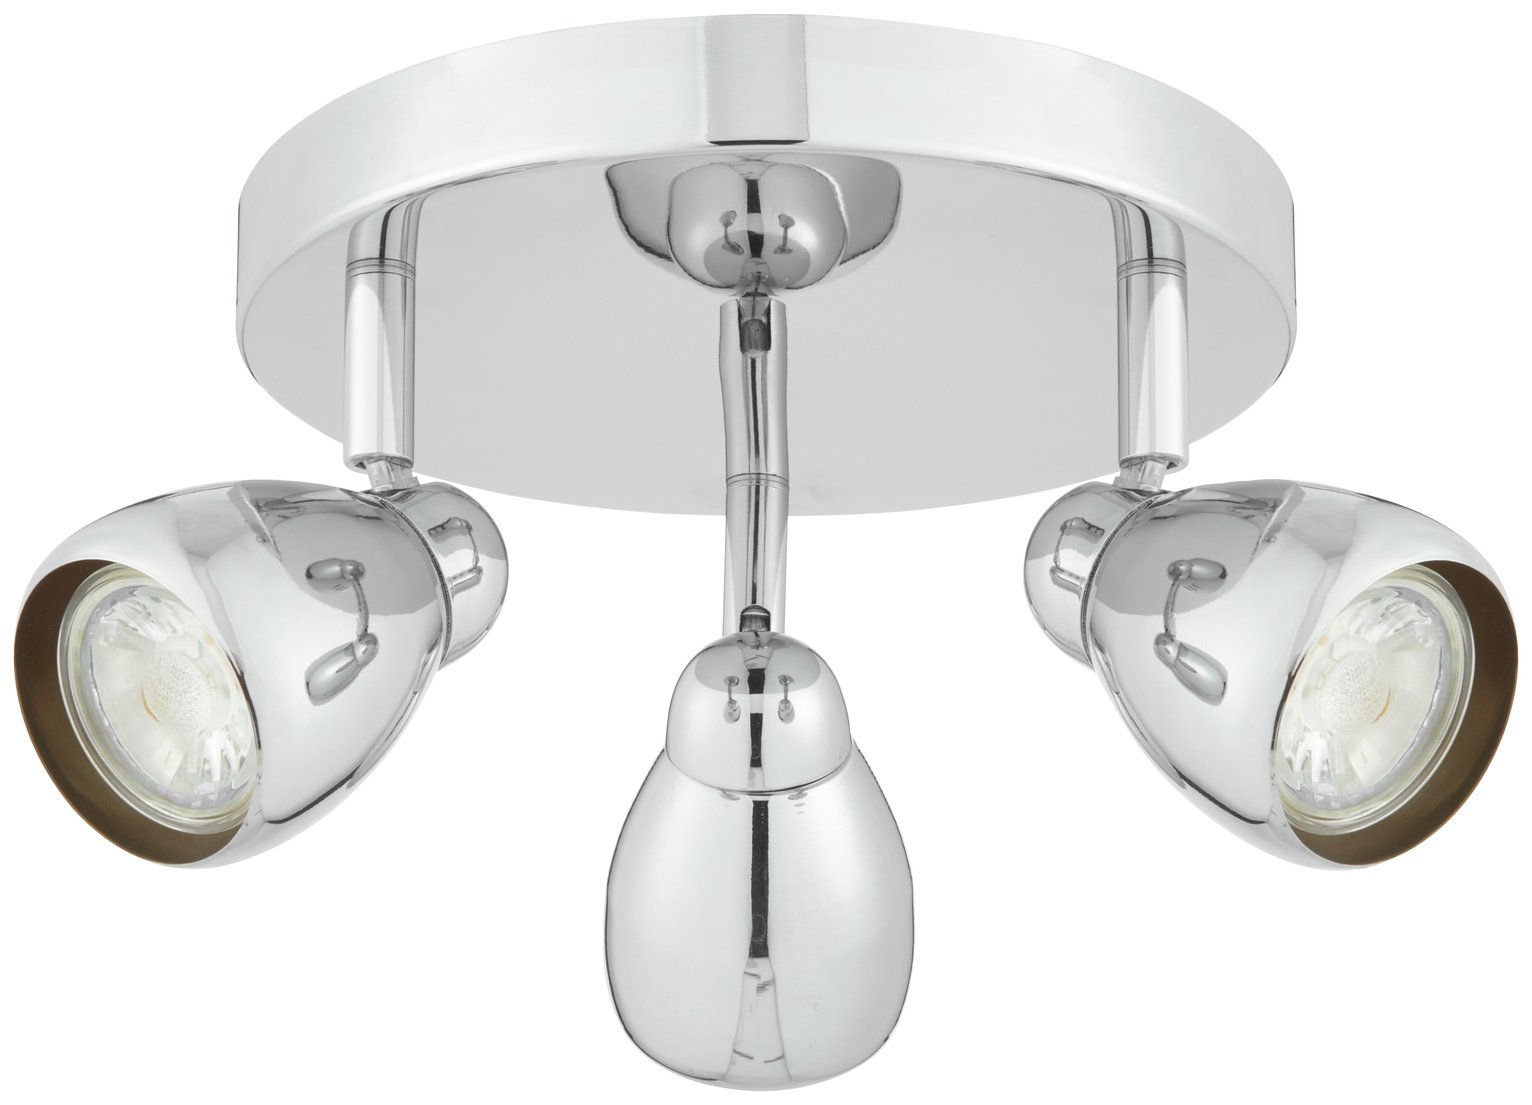 Argos Home Optimus 3 Light Spotlight Ceiling Plate - Chrome